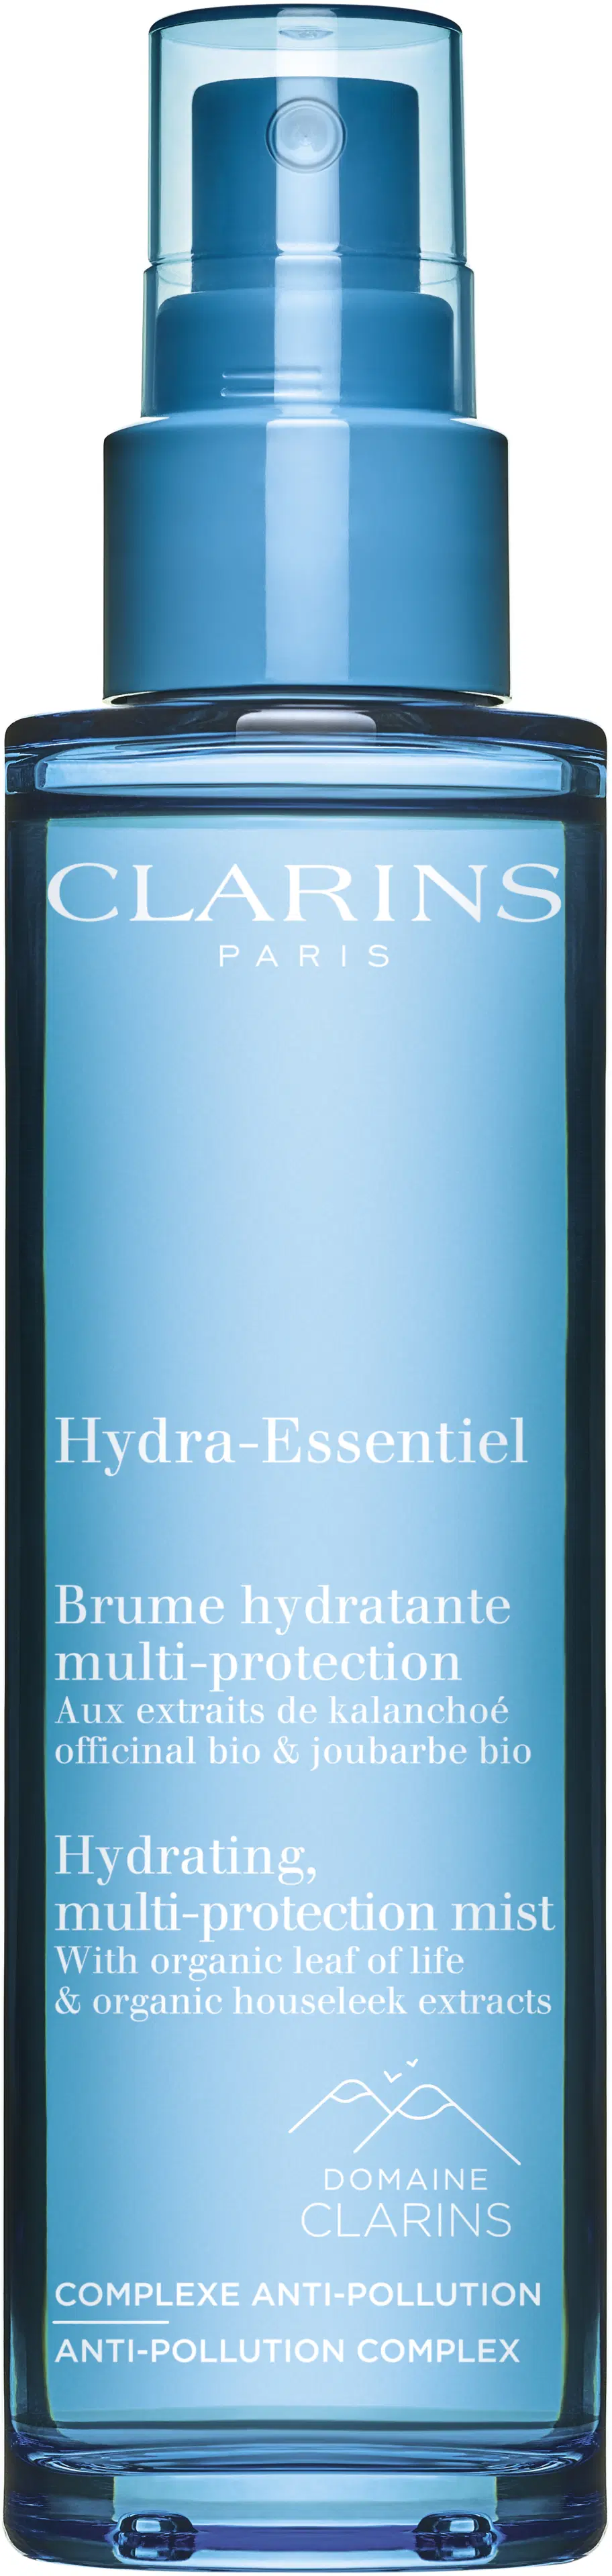 Clarins Hydra-Essentiel Mist kasvosuihke 75 ml